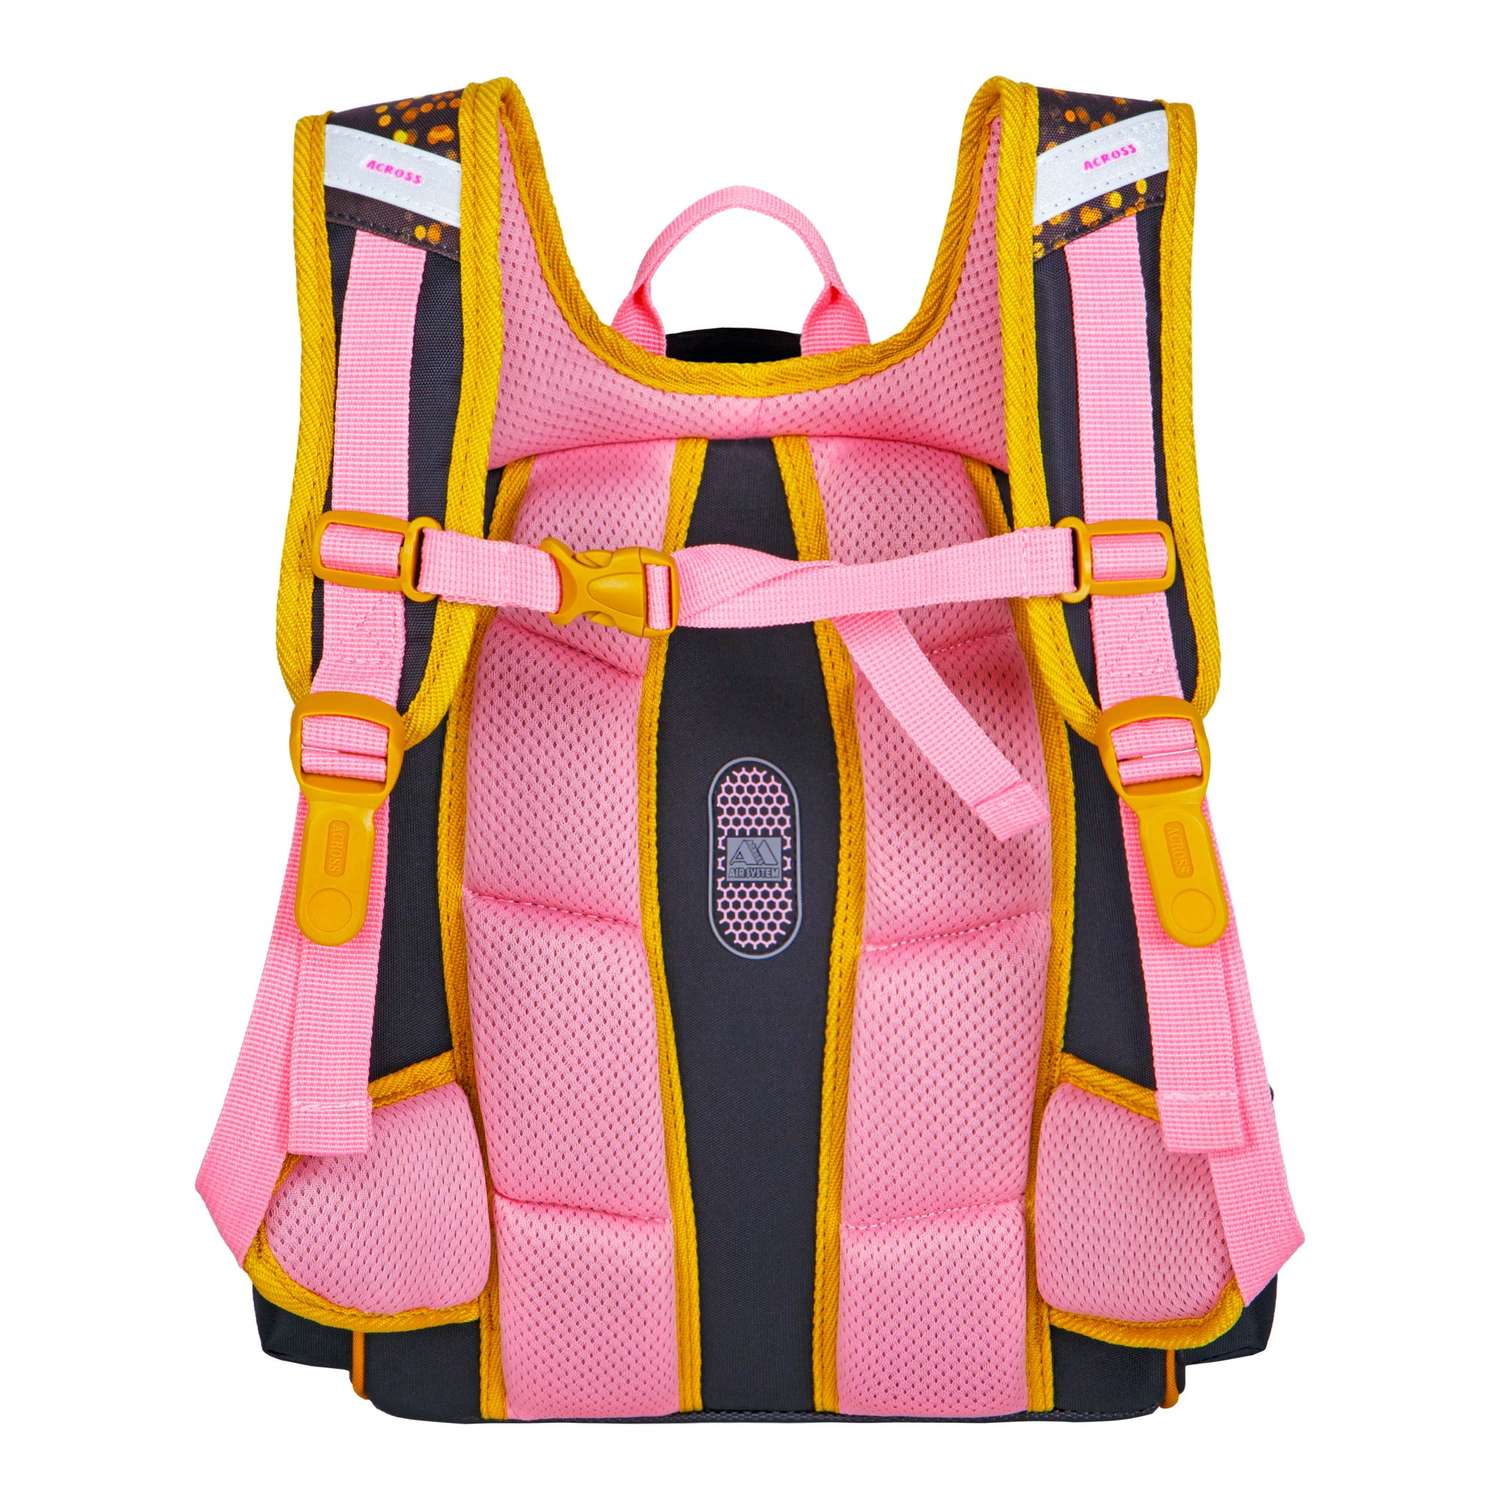 Рюкзак школьный ACROSS с наполнением: мешочек для обуви каркасный пенал и брелок - фото 4